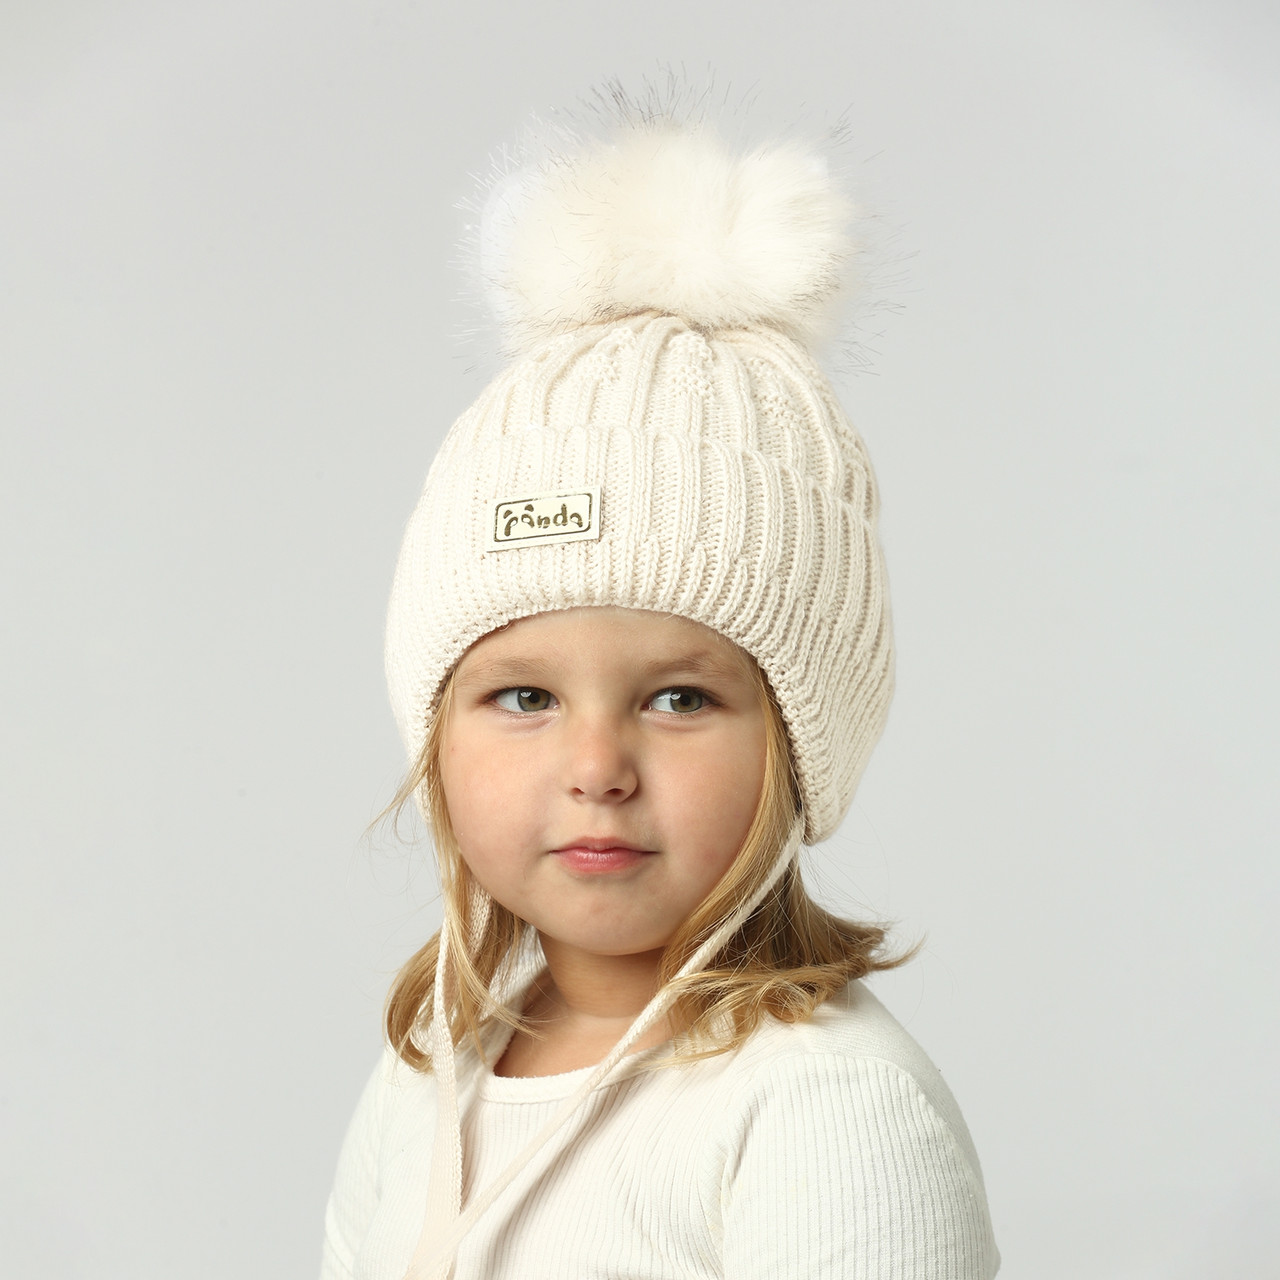 Зимова шапка для дівчинки 50 52 розміру на 3 4 роки 5 6 років, Зимова шапка дівчинці спицями молоко